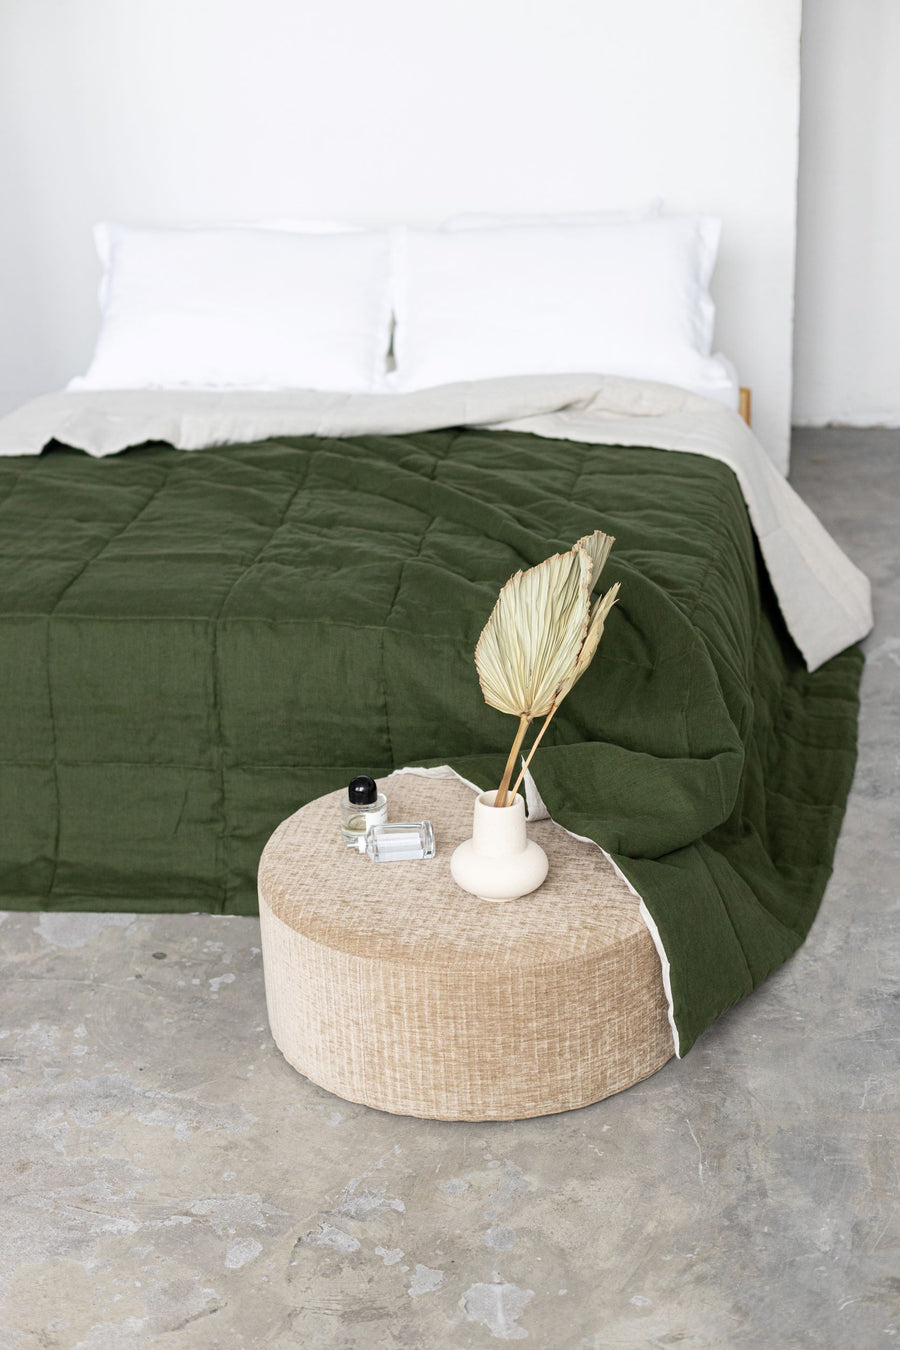 Dark green quilted linen bedspread